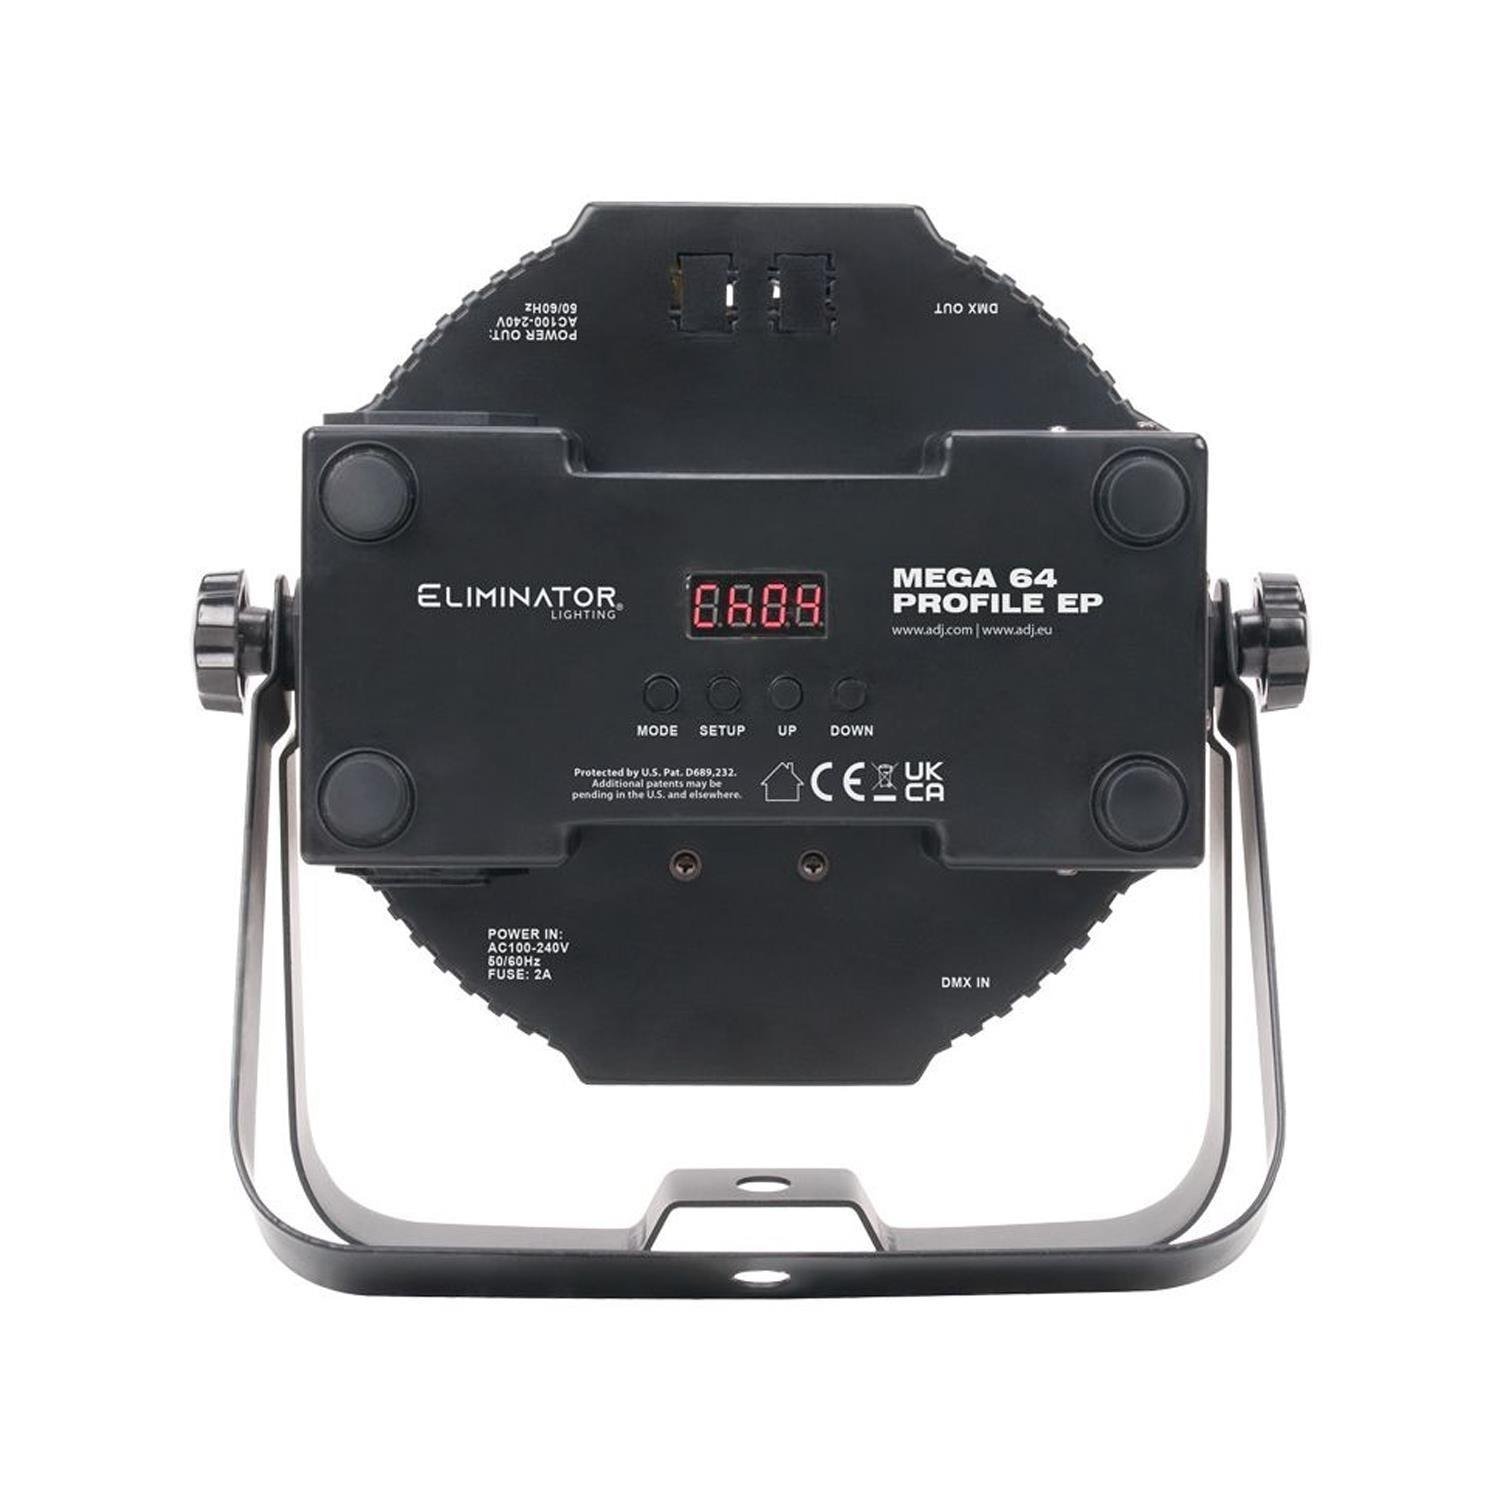 Eliminator Mega 64 Profile EP 12 x 4w LED Par Can - DY Pro Audio